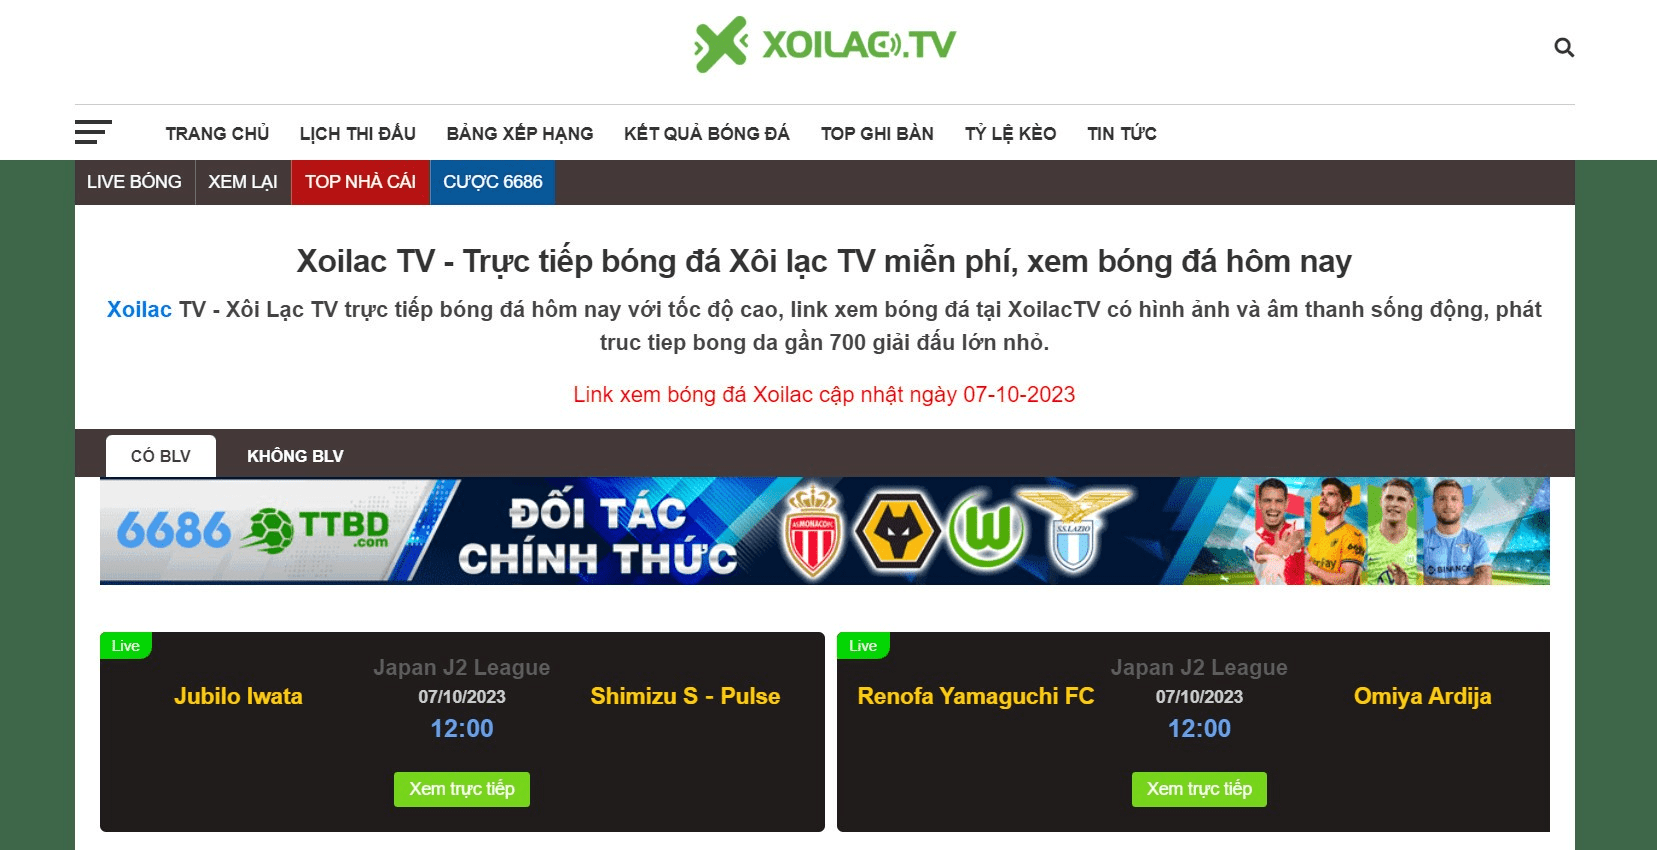 Tham gia vào cộng đồng bóng đá bằng cách truy cập Xoilac TV